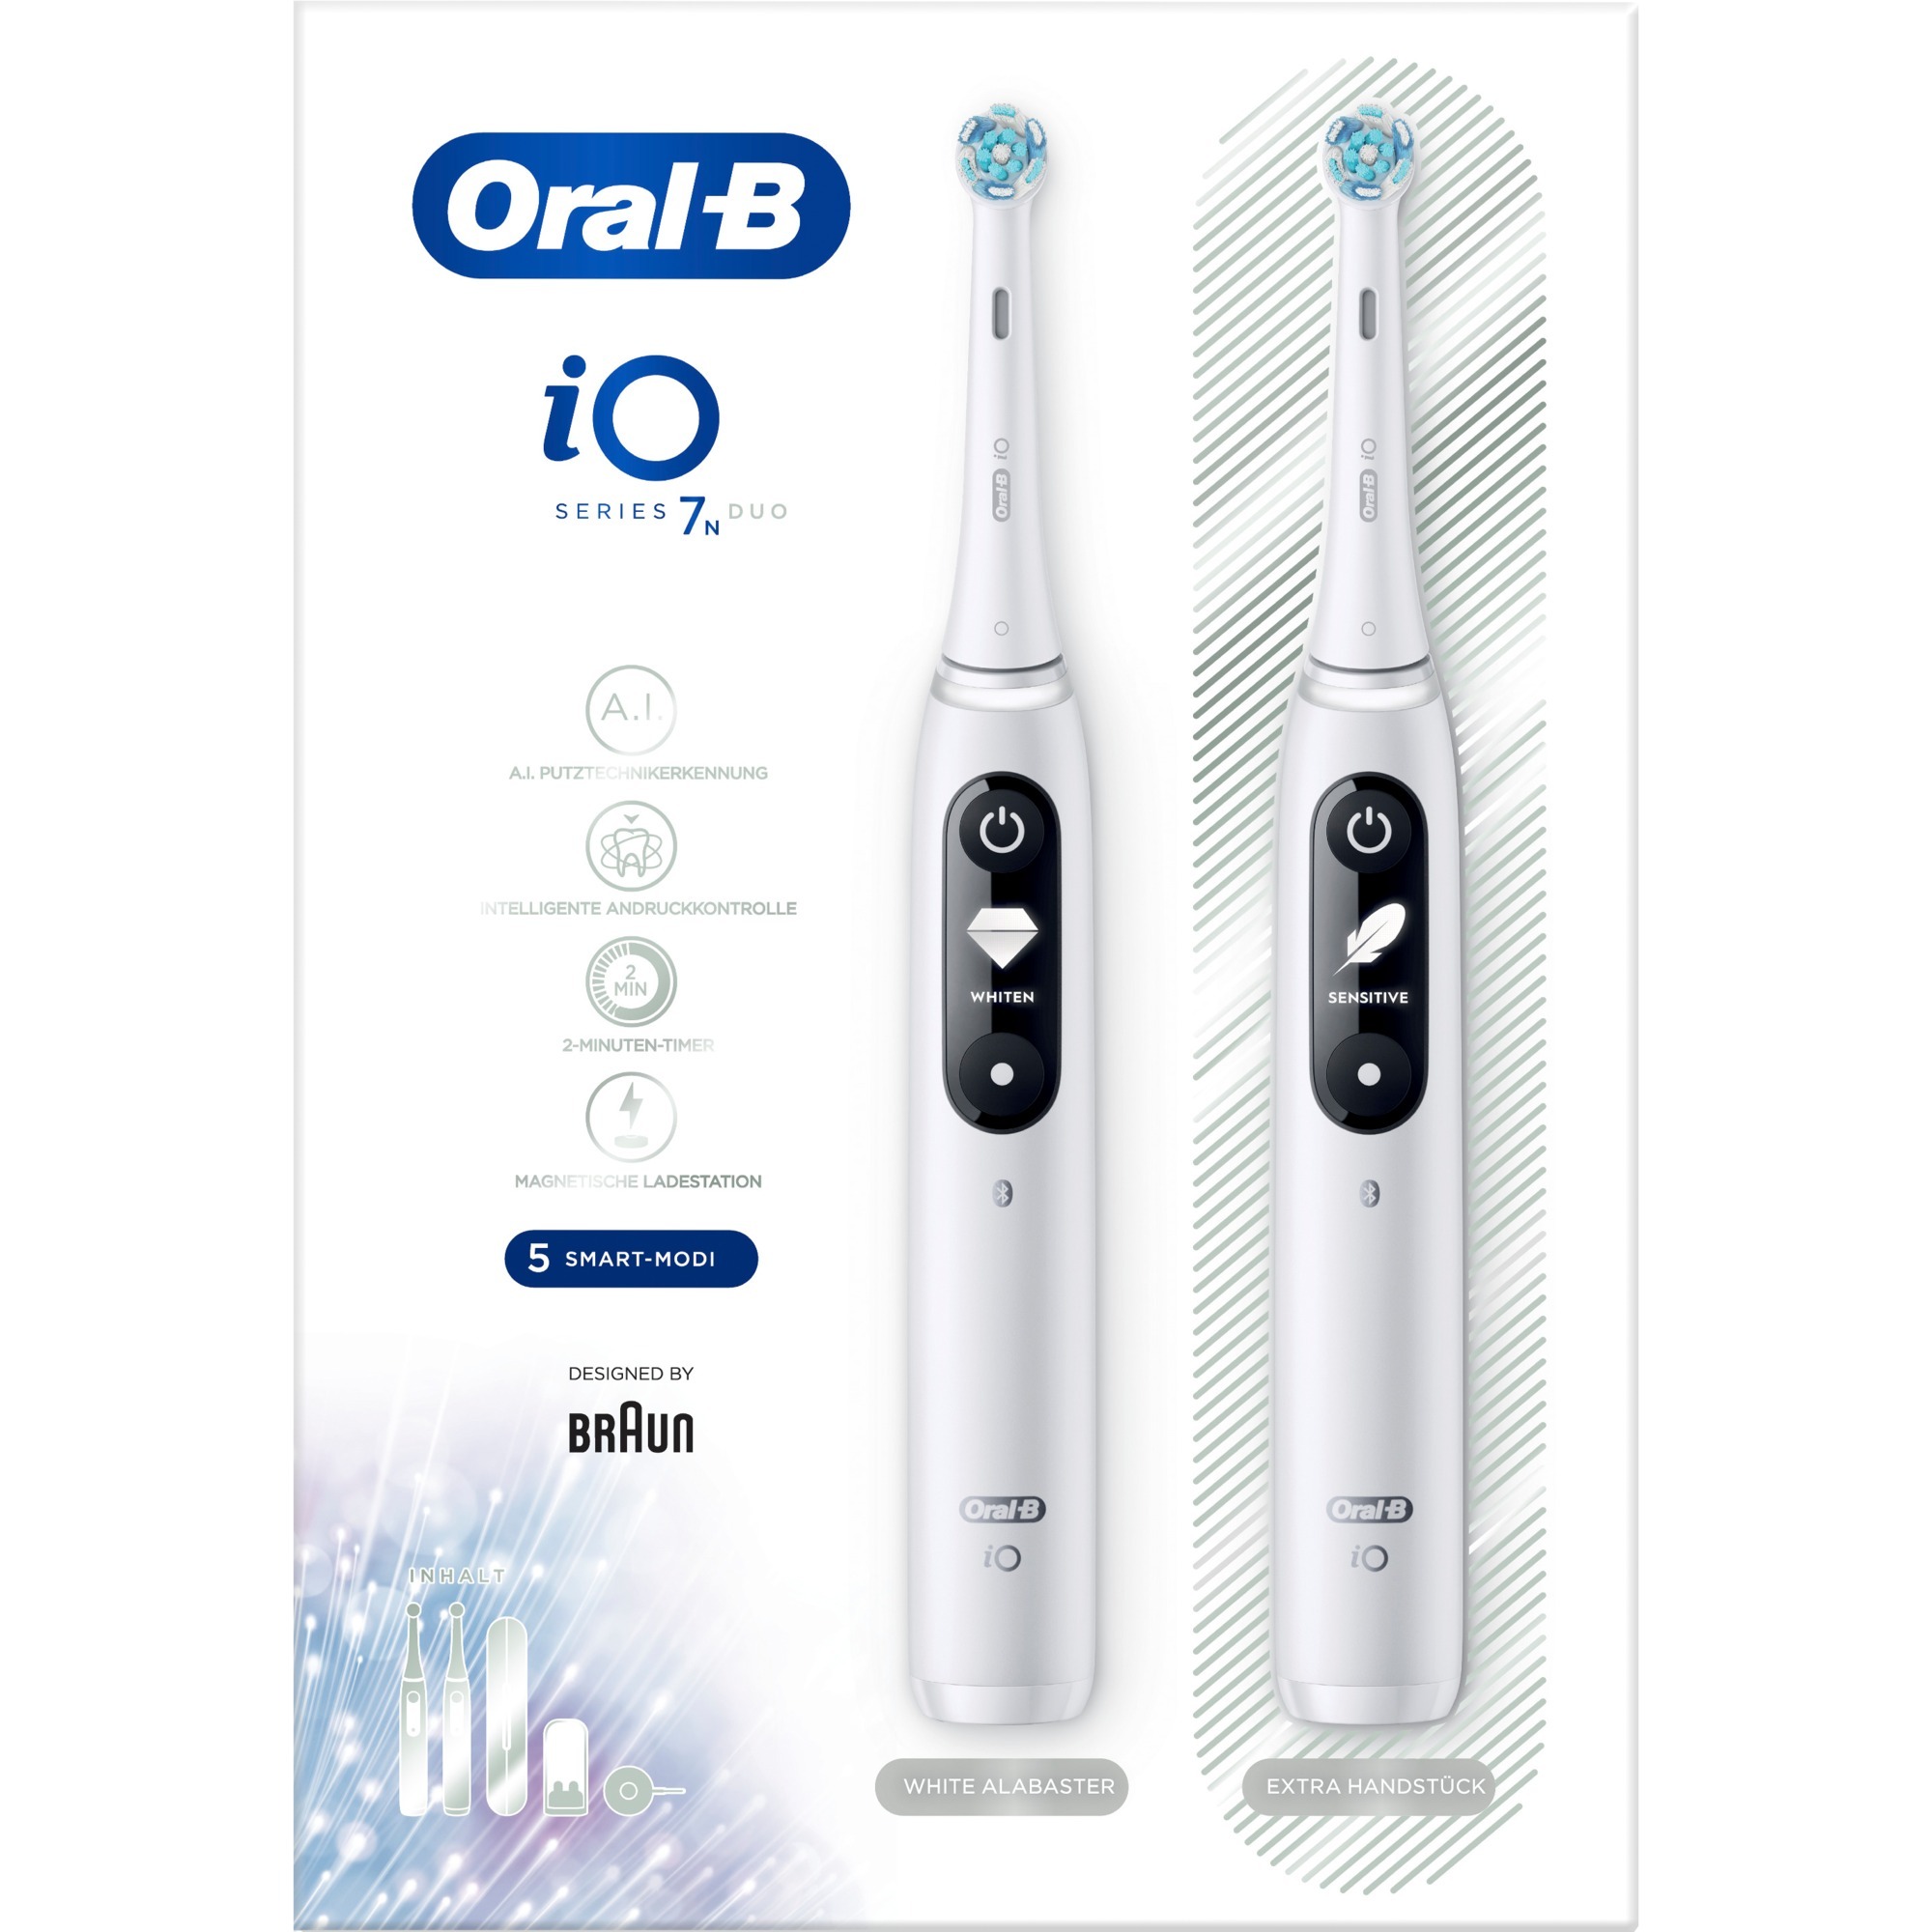 Image of Alternate - Oral-B iO Series 7N Duo, Elektrische Zahnbürste online einkaufen bei Alternate